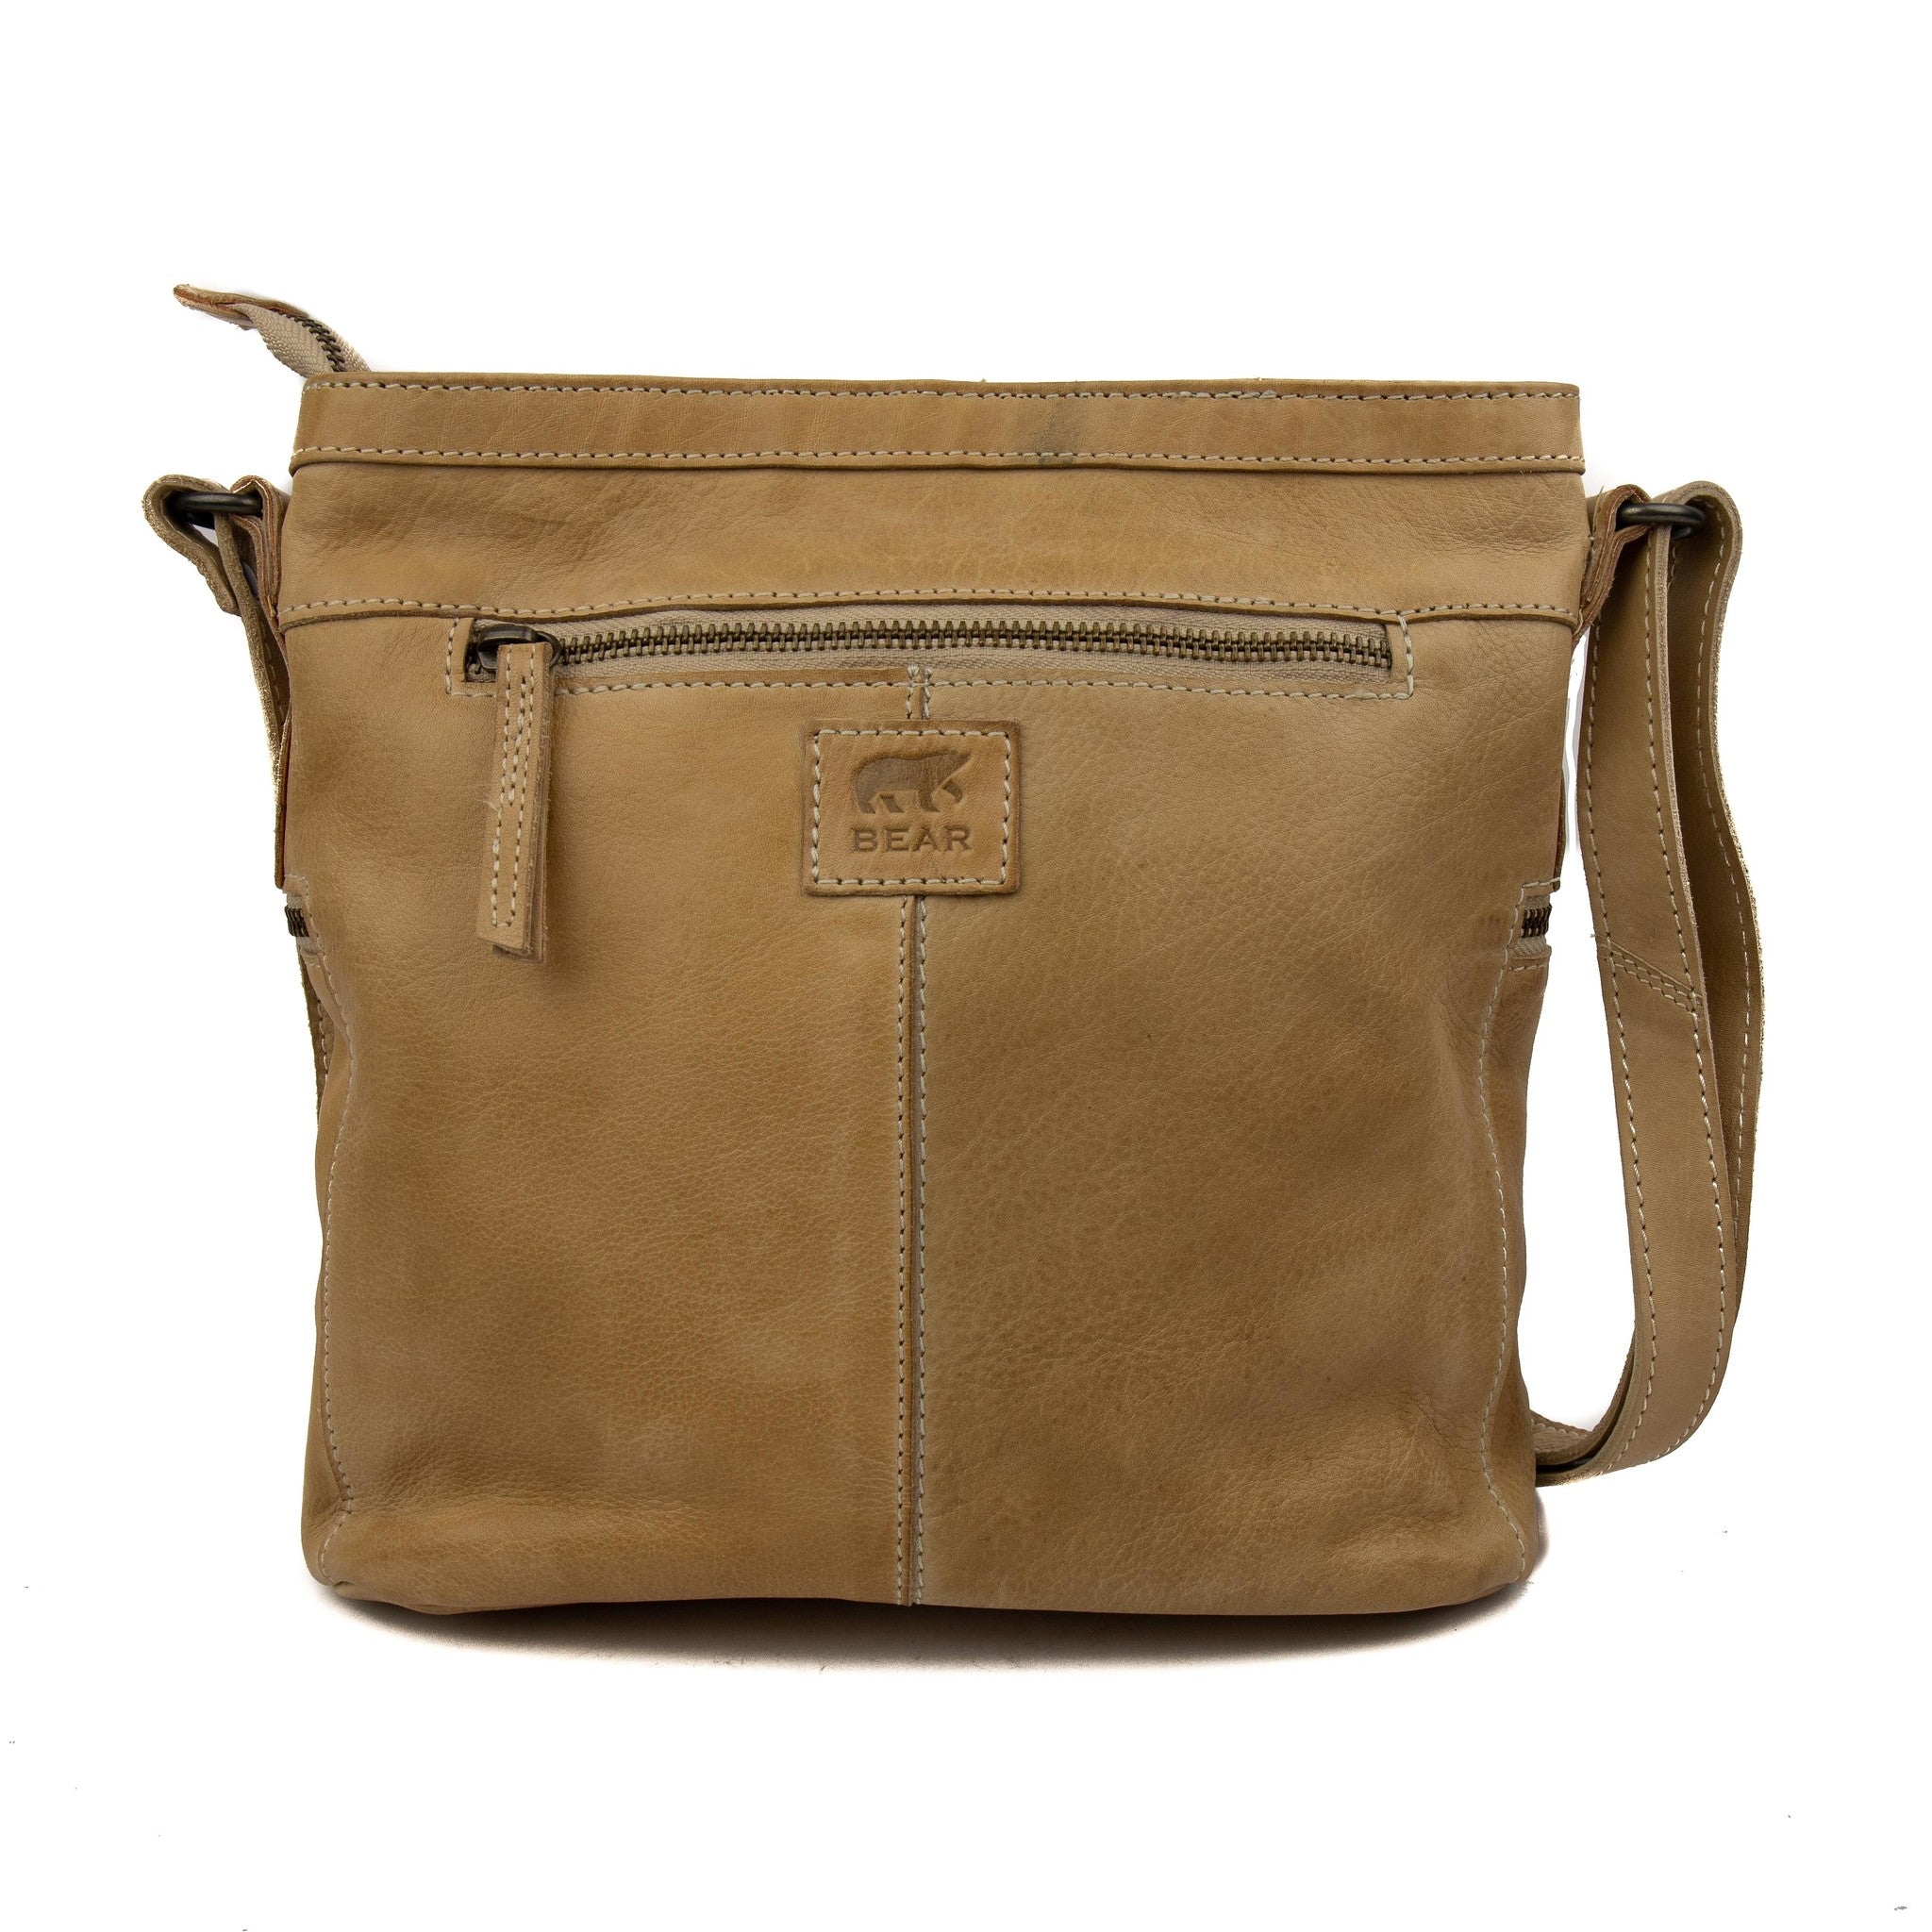 Shoulder bag 'Chessi' beige - CL 35556